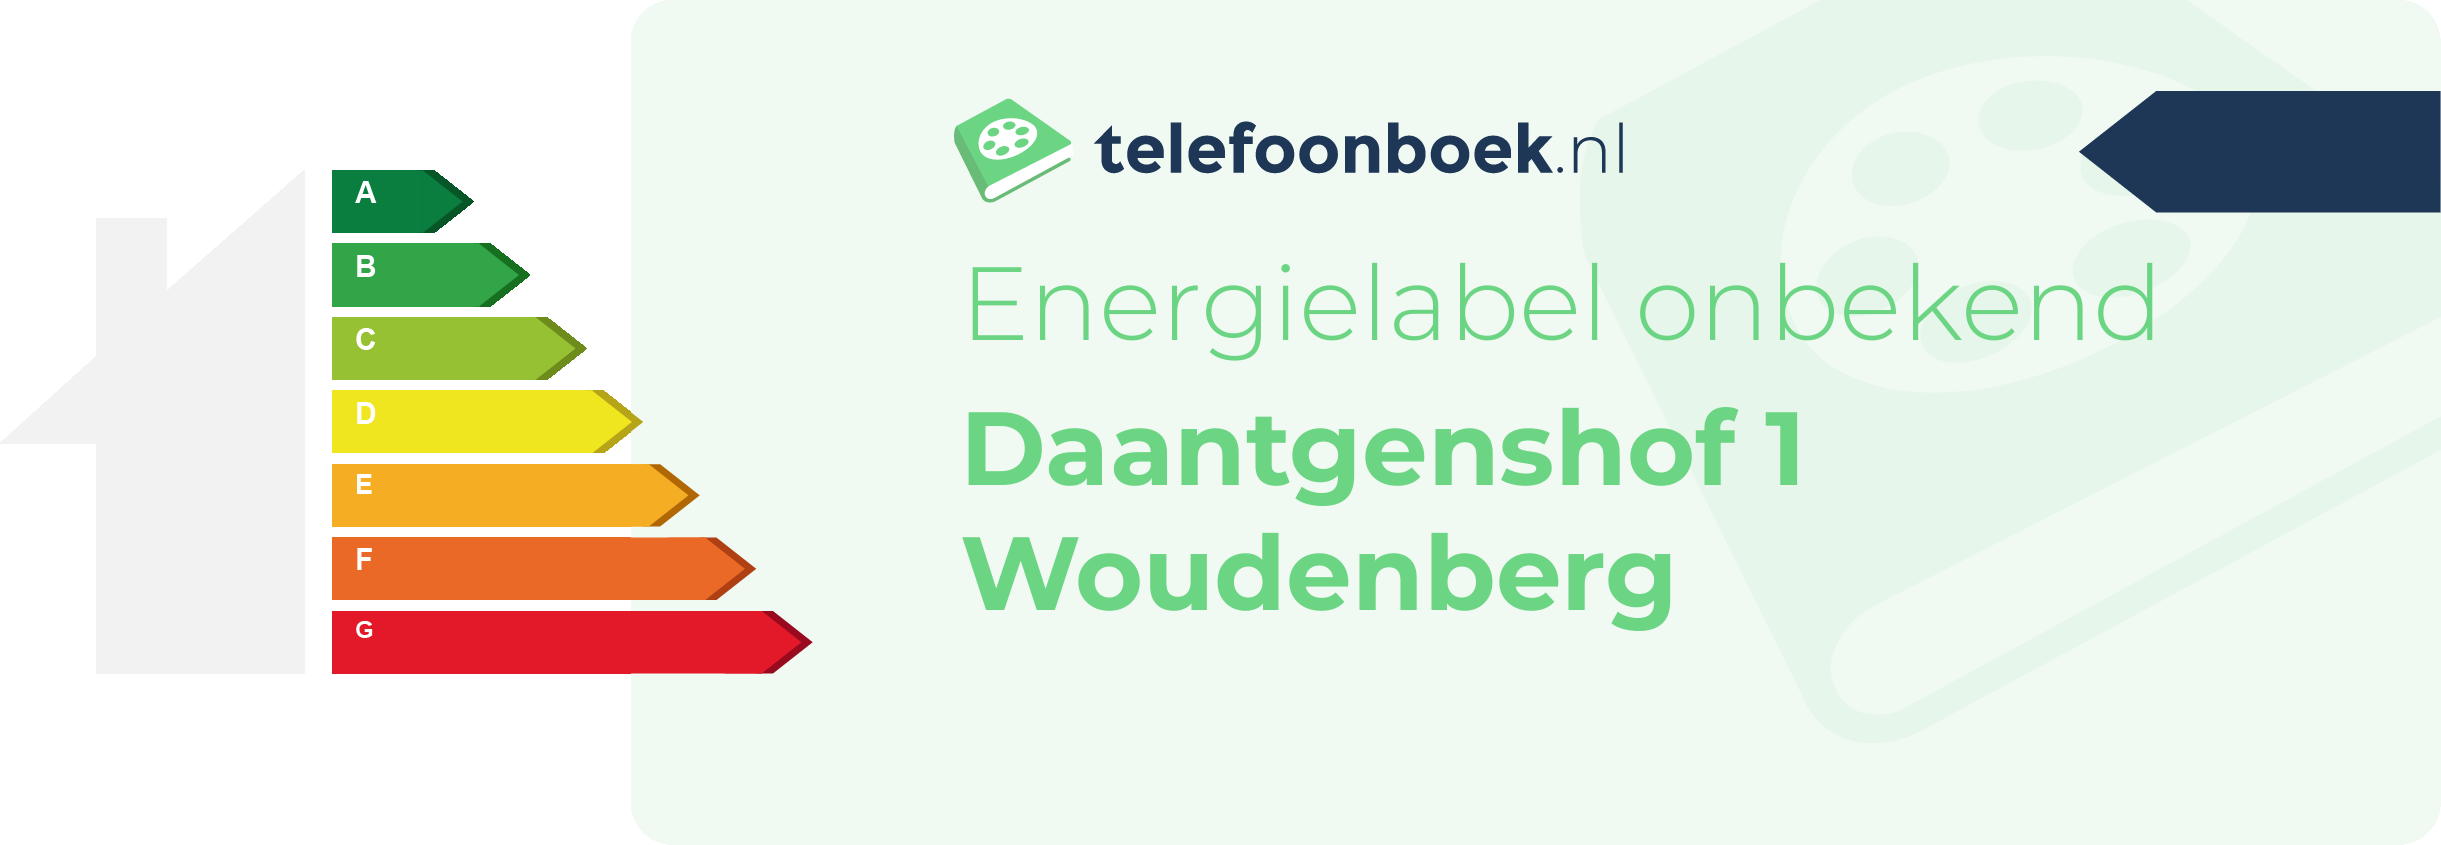 Energielabel Daantgenshof 1 Woudenberg